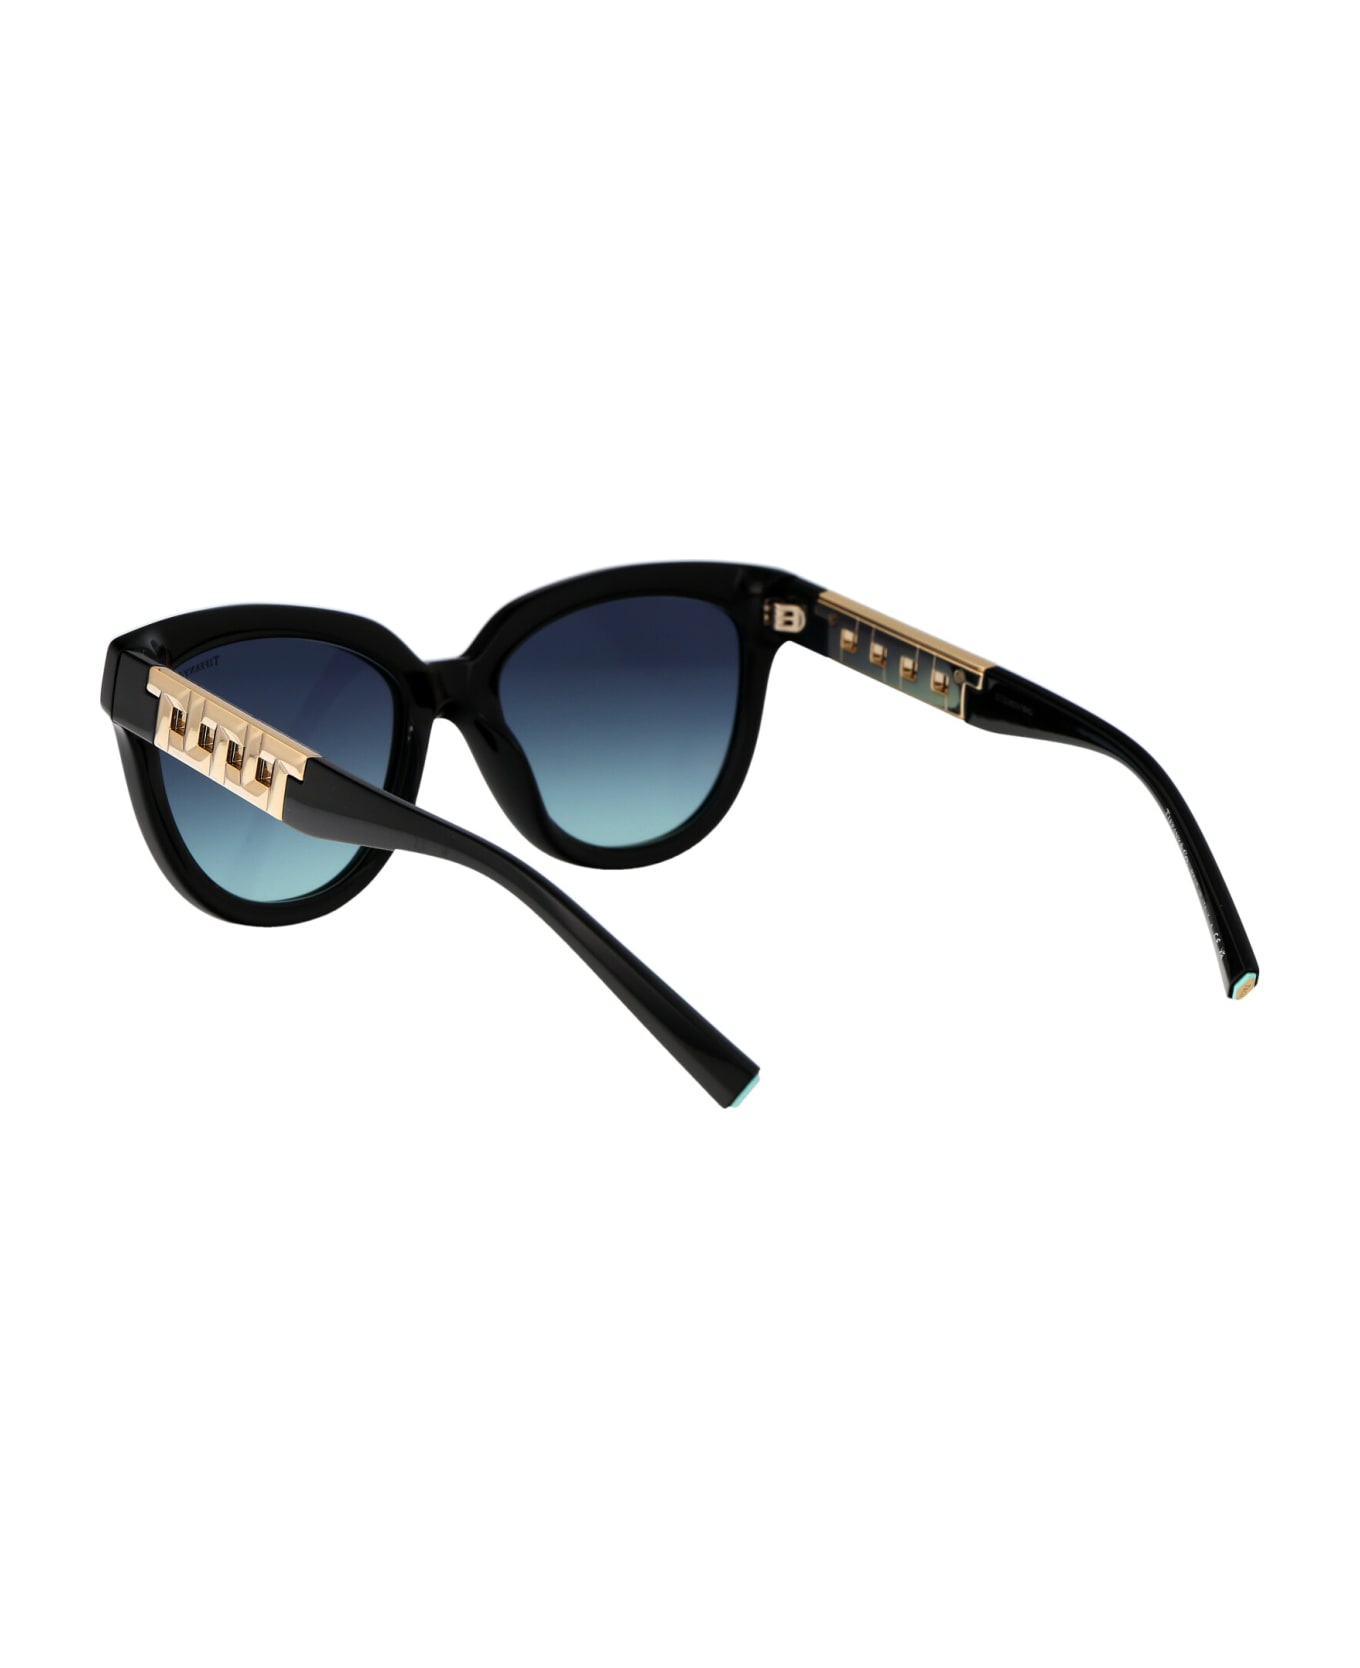 Tiffany & Co. 0tf4215 Sunglasses - 83429S Black サングラス